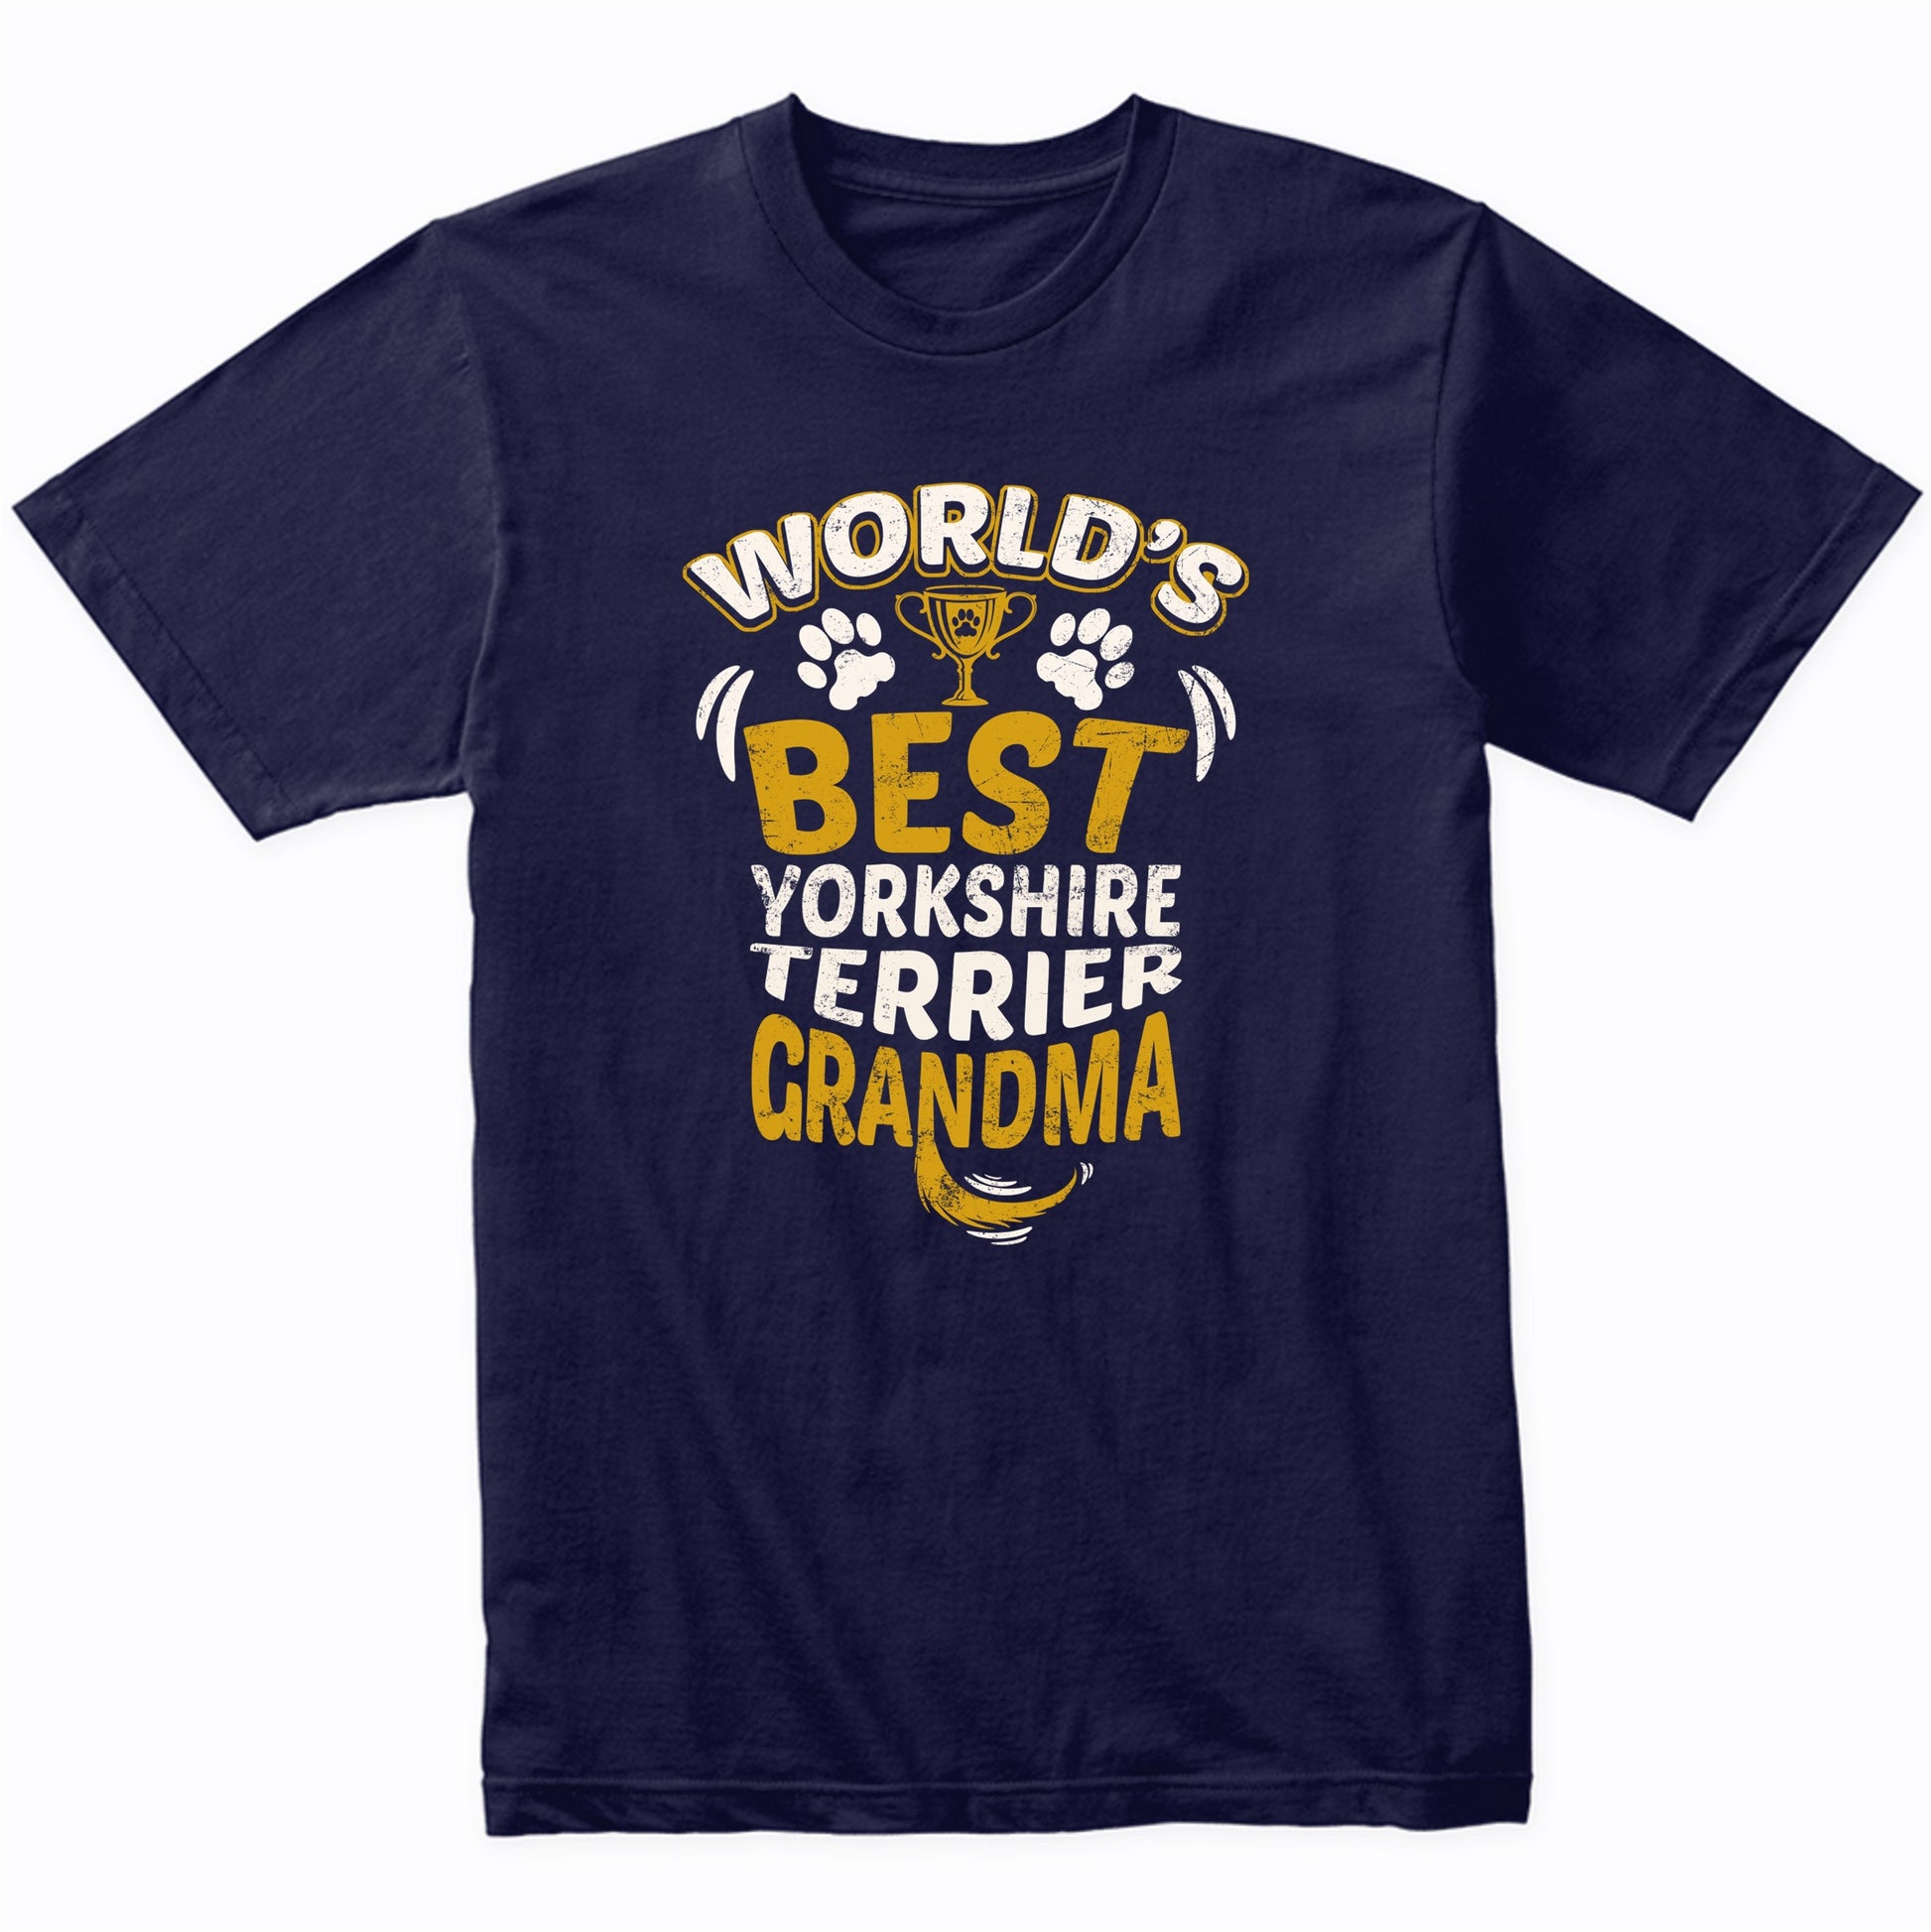 World's Best Yorkshire Terrier Grandma Graphic T-Shirt